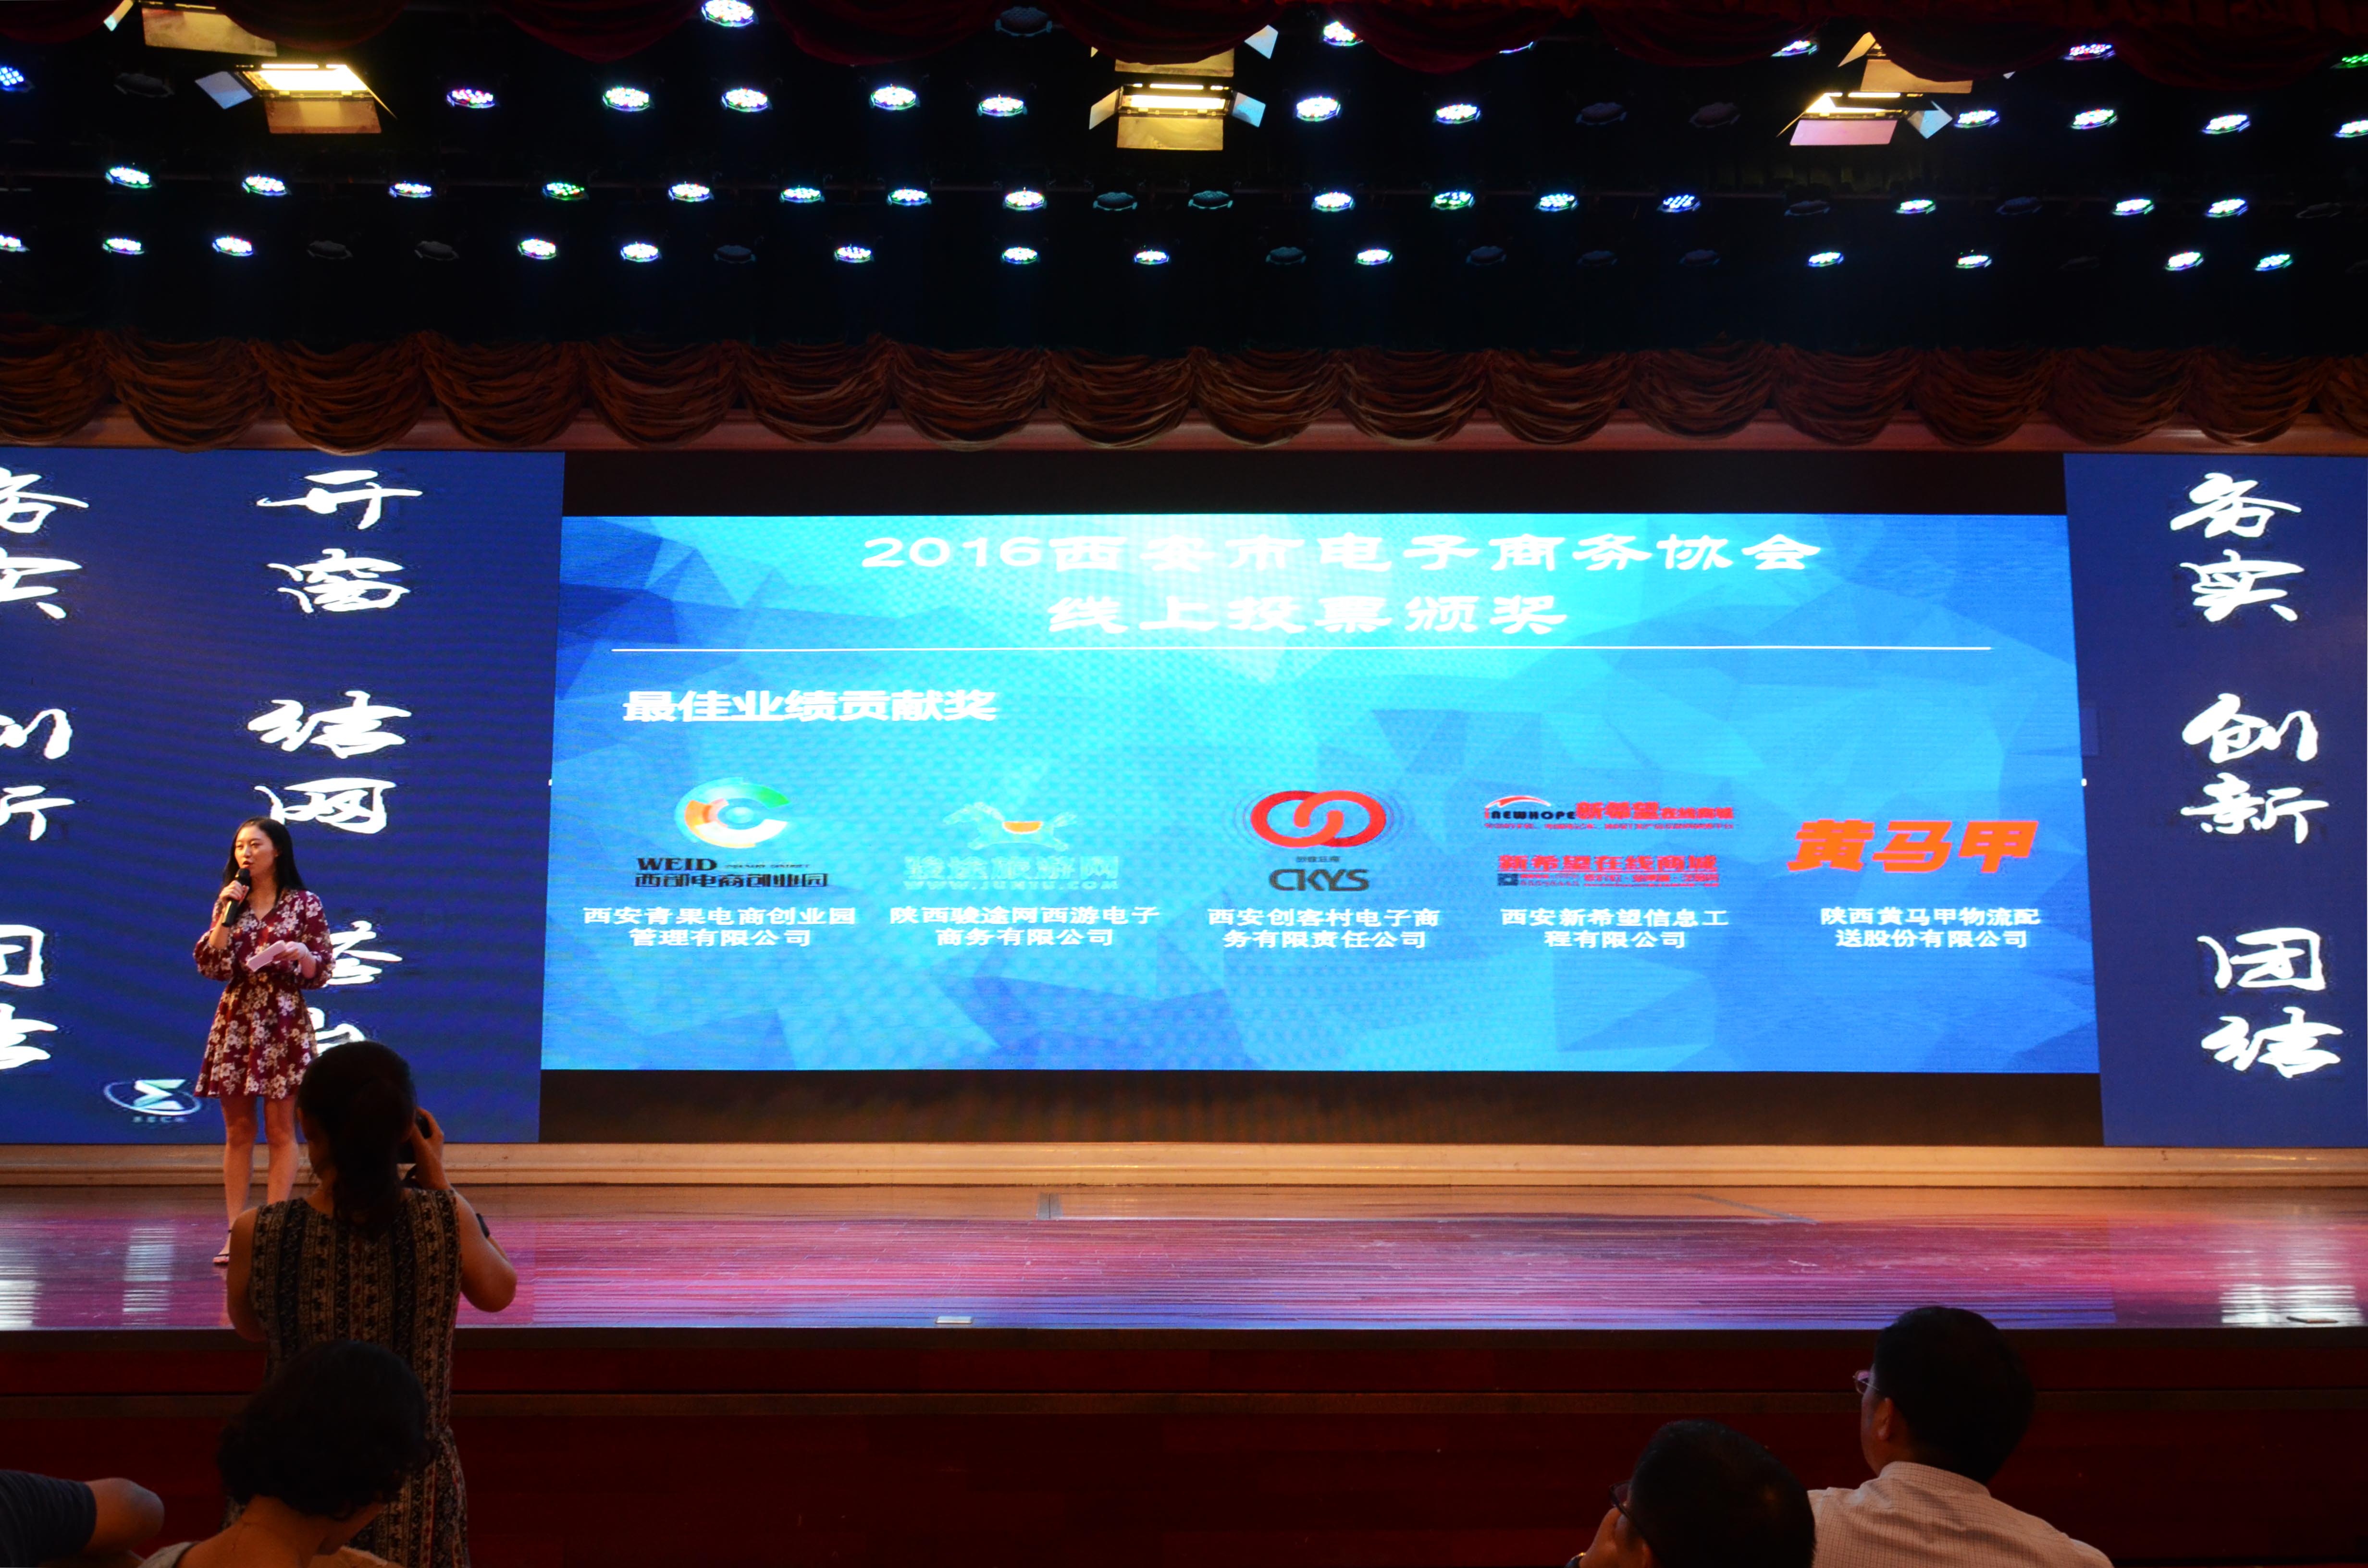 恭喜创客云商获得西安市2016年电子商务最佳业绩贡献企业奖